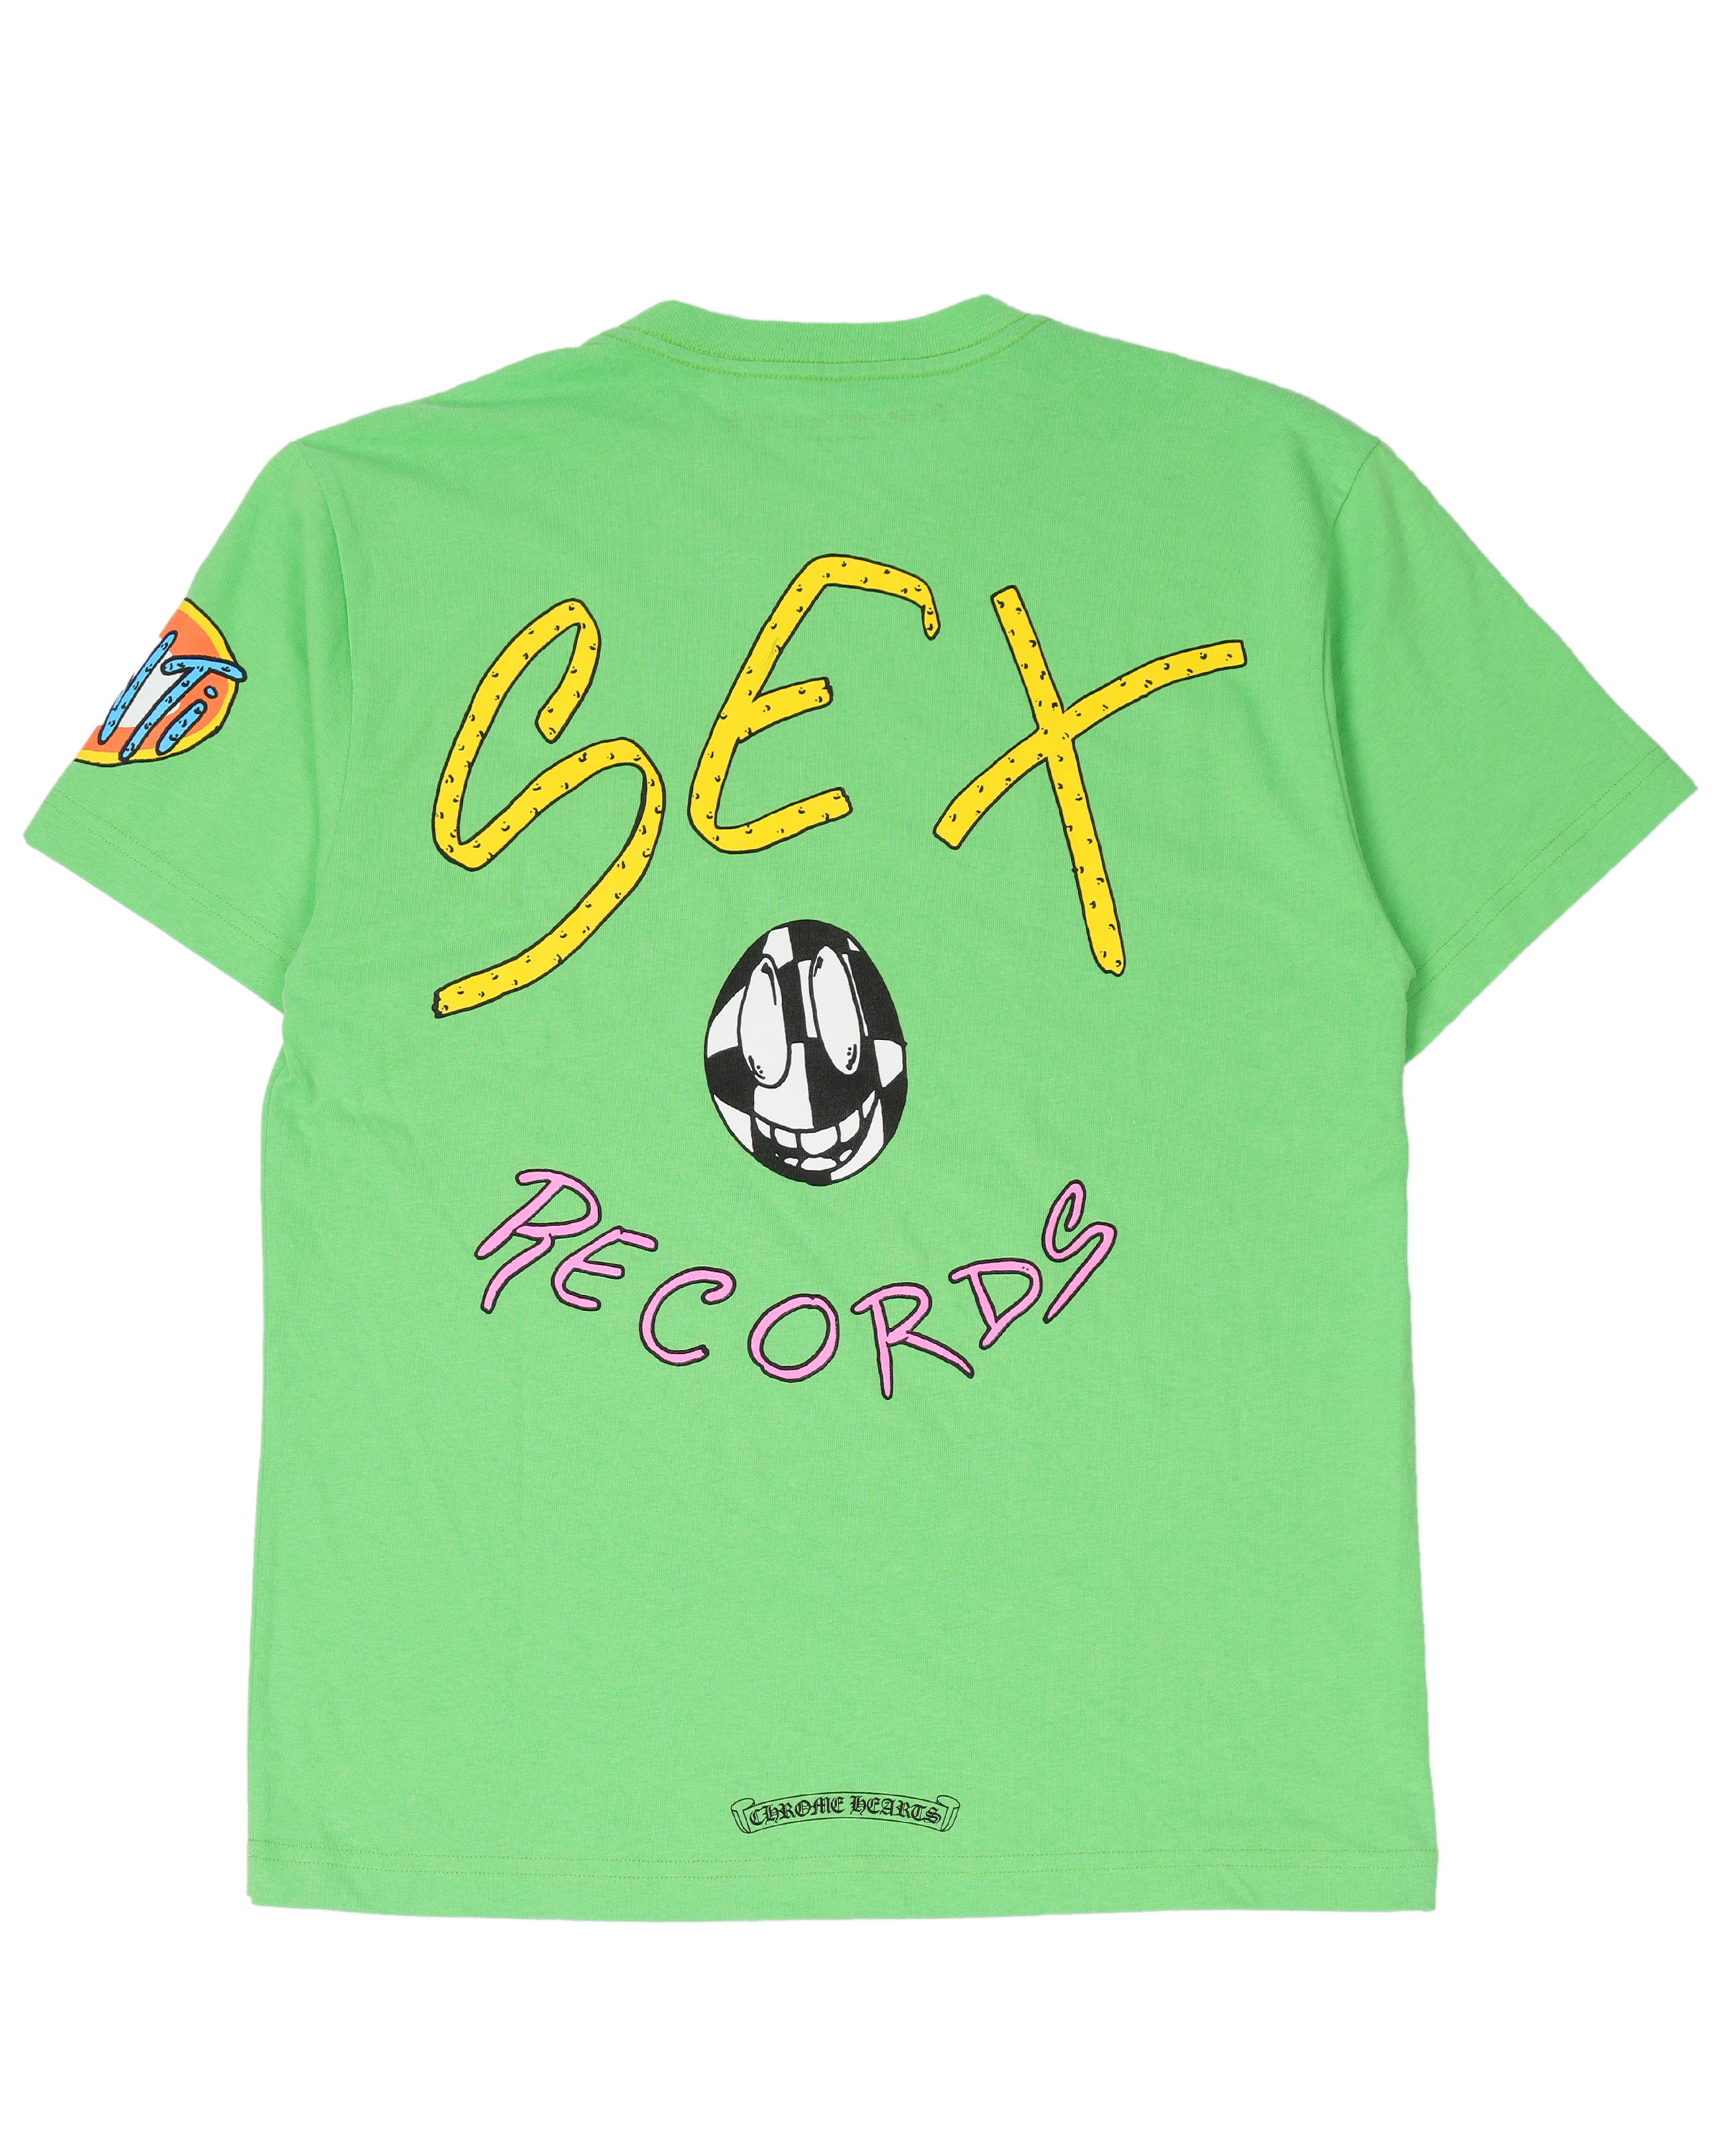 Matty Boy Sex Records T-Shirt